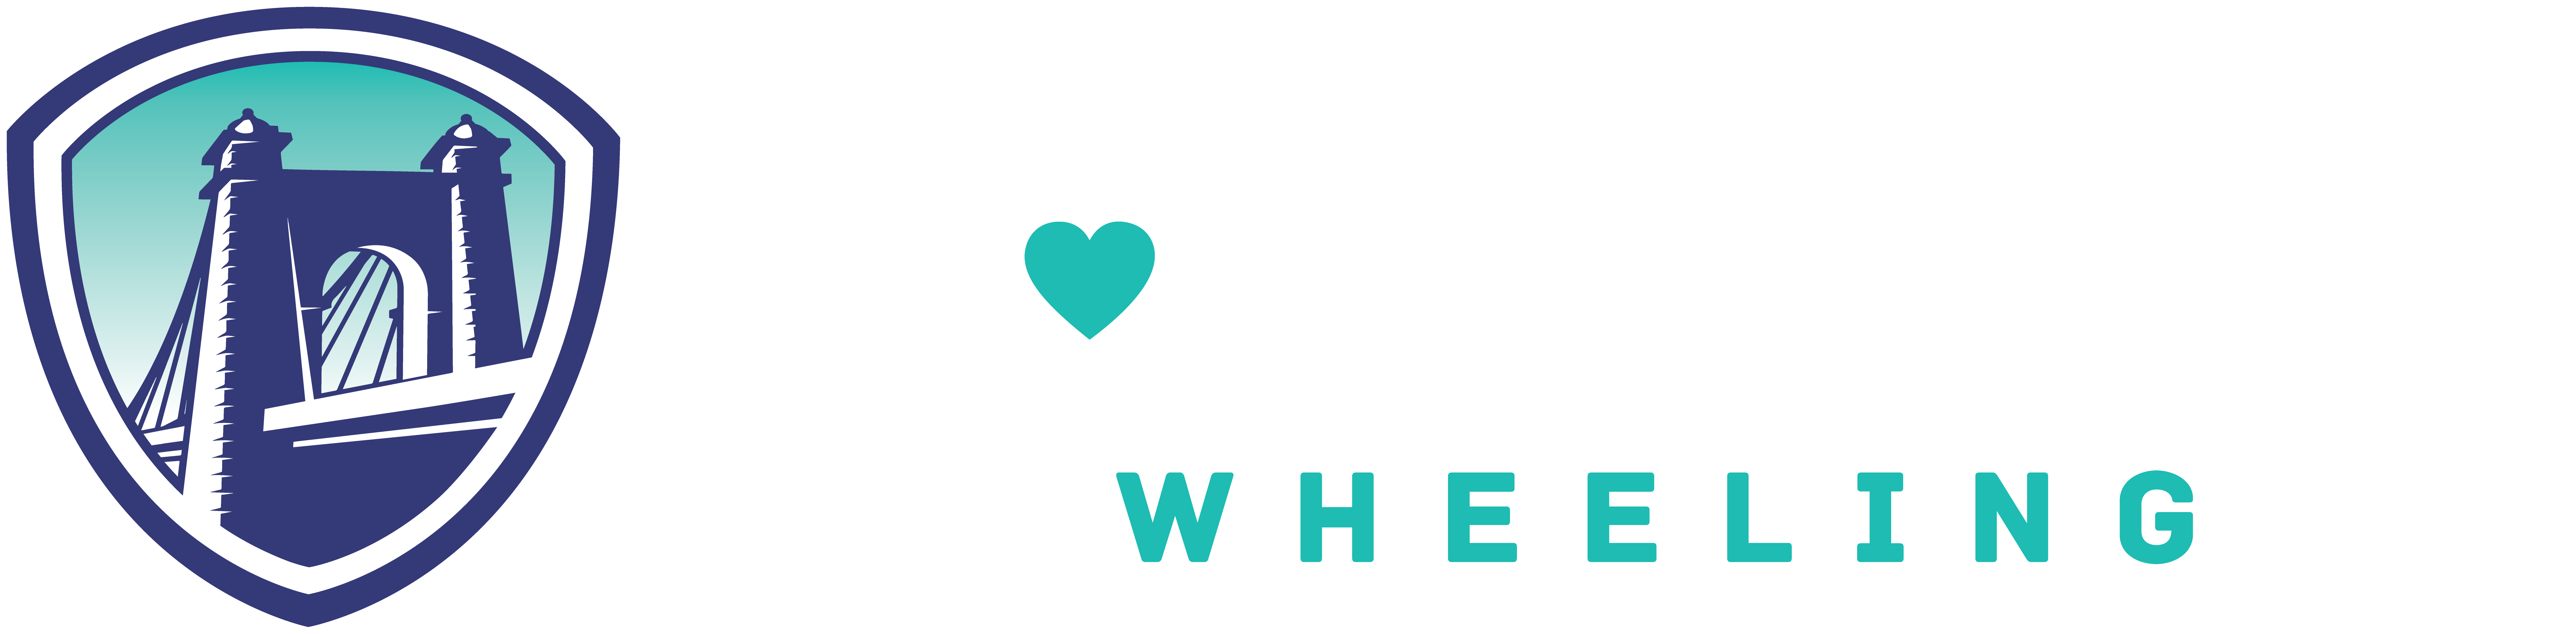 Volunteer-Wheeling-Logo-White-Teal2